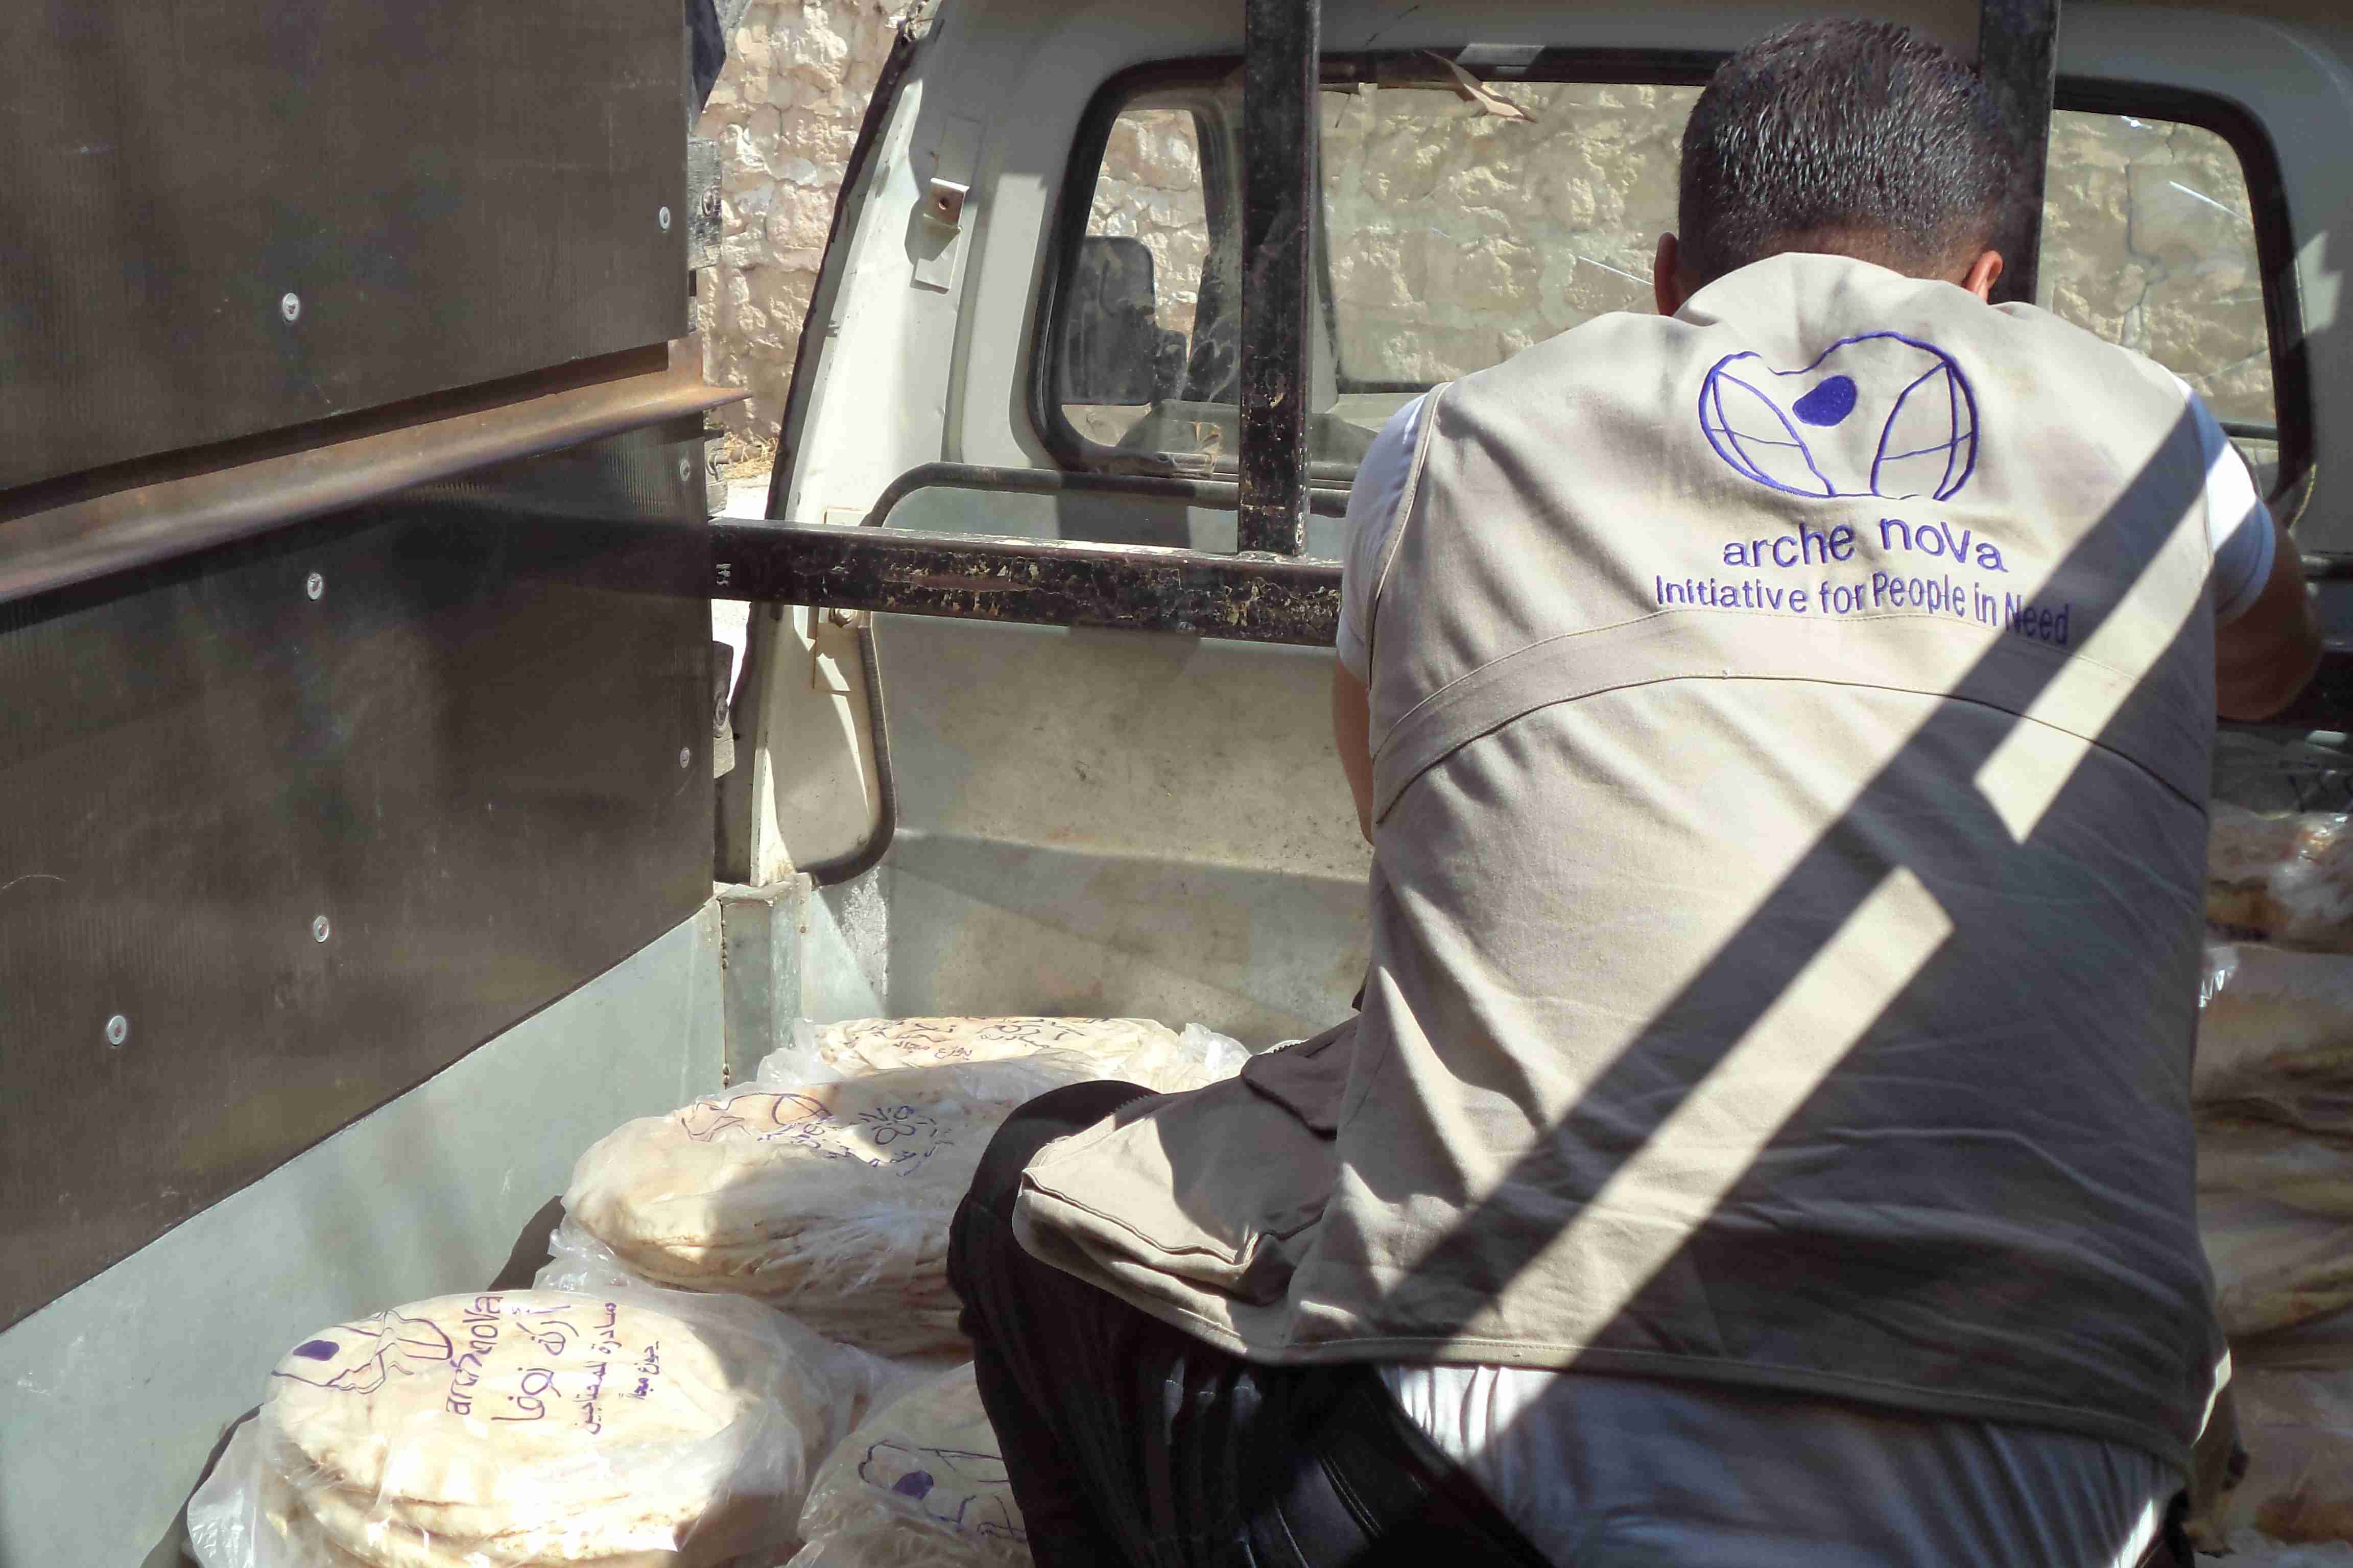 ein arche noVa Mitarbeiter verstaut Brotpakete auf der Ladefläche eines Transporters